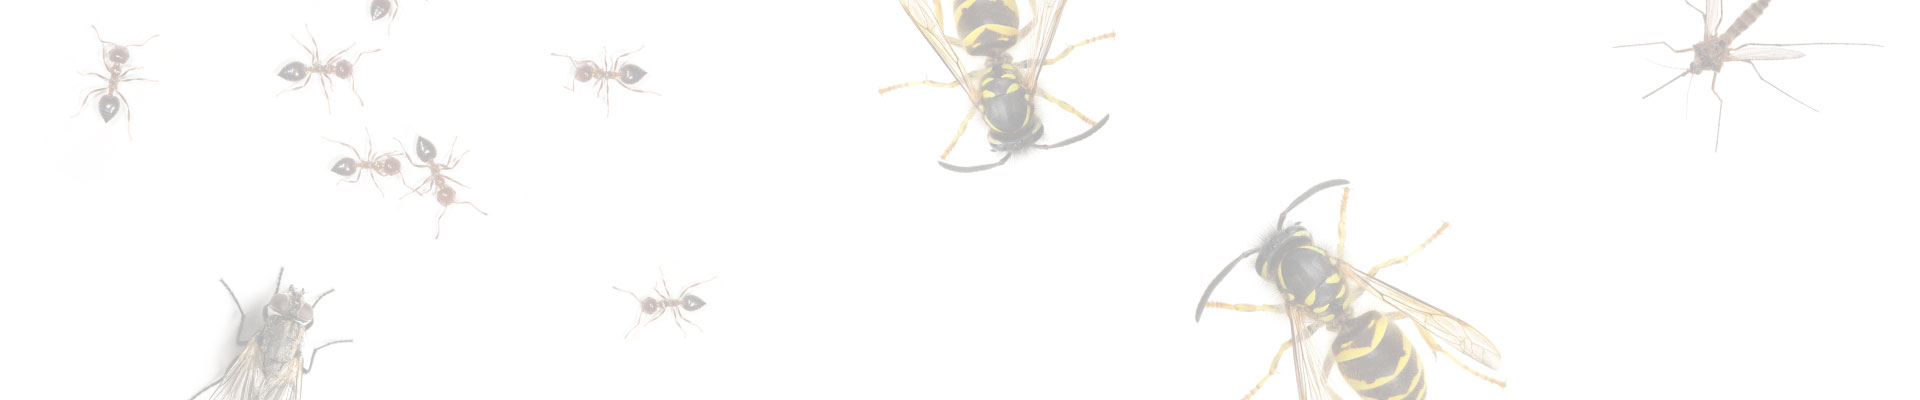 Slider_Background_Insektizide